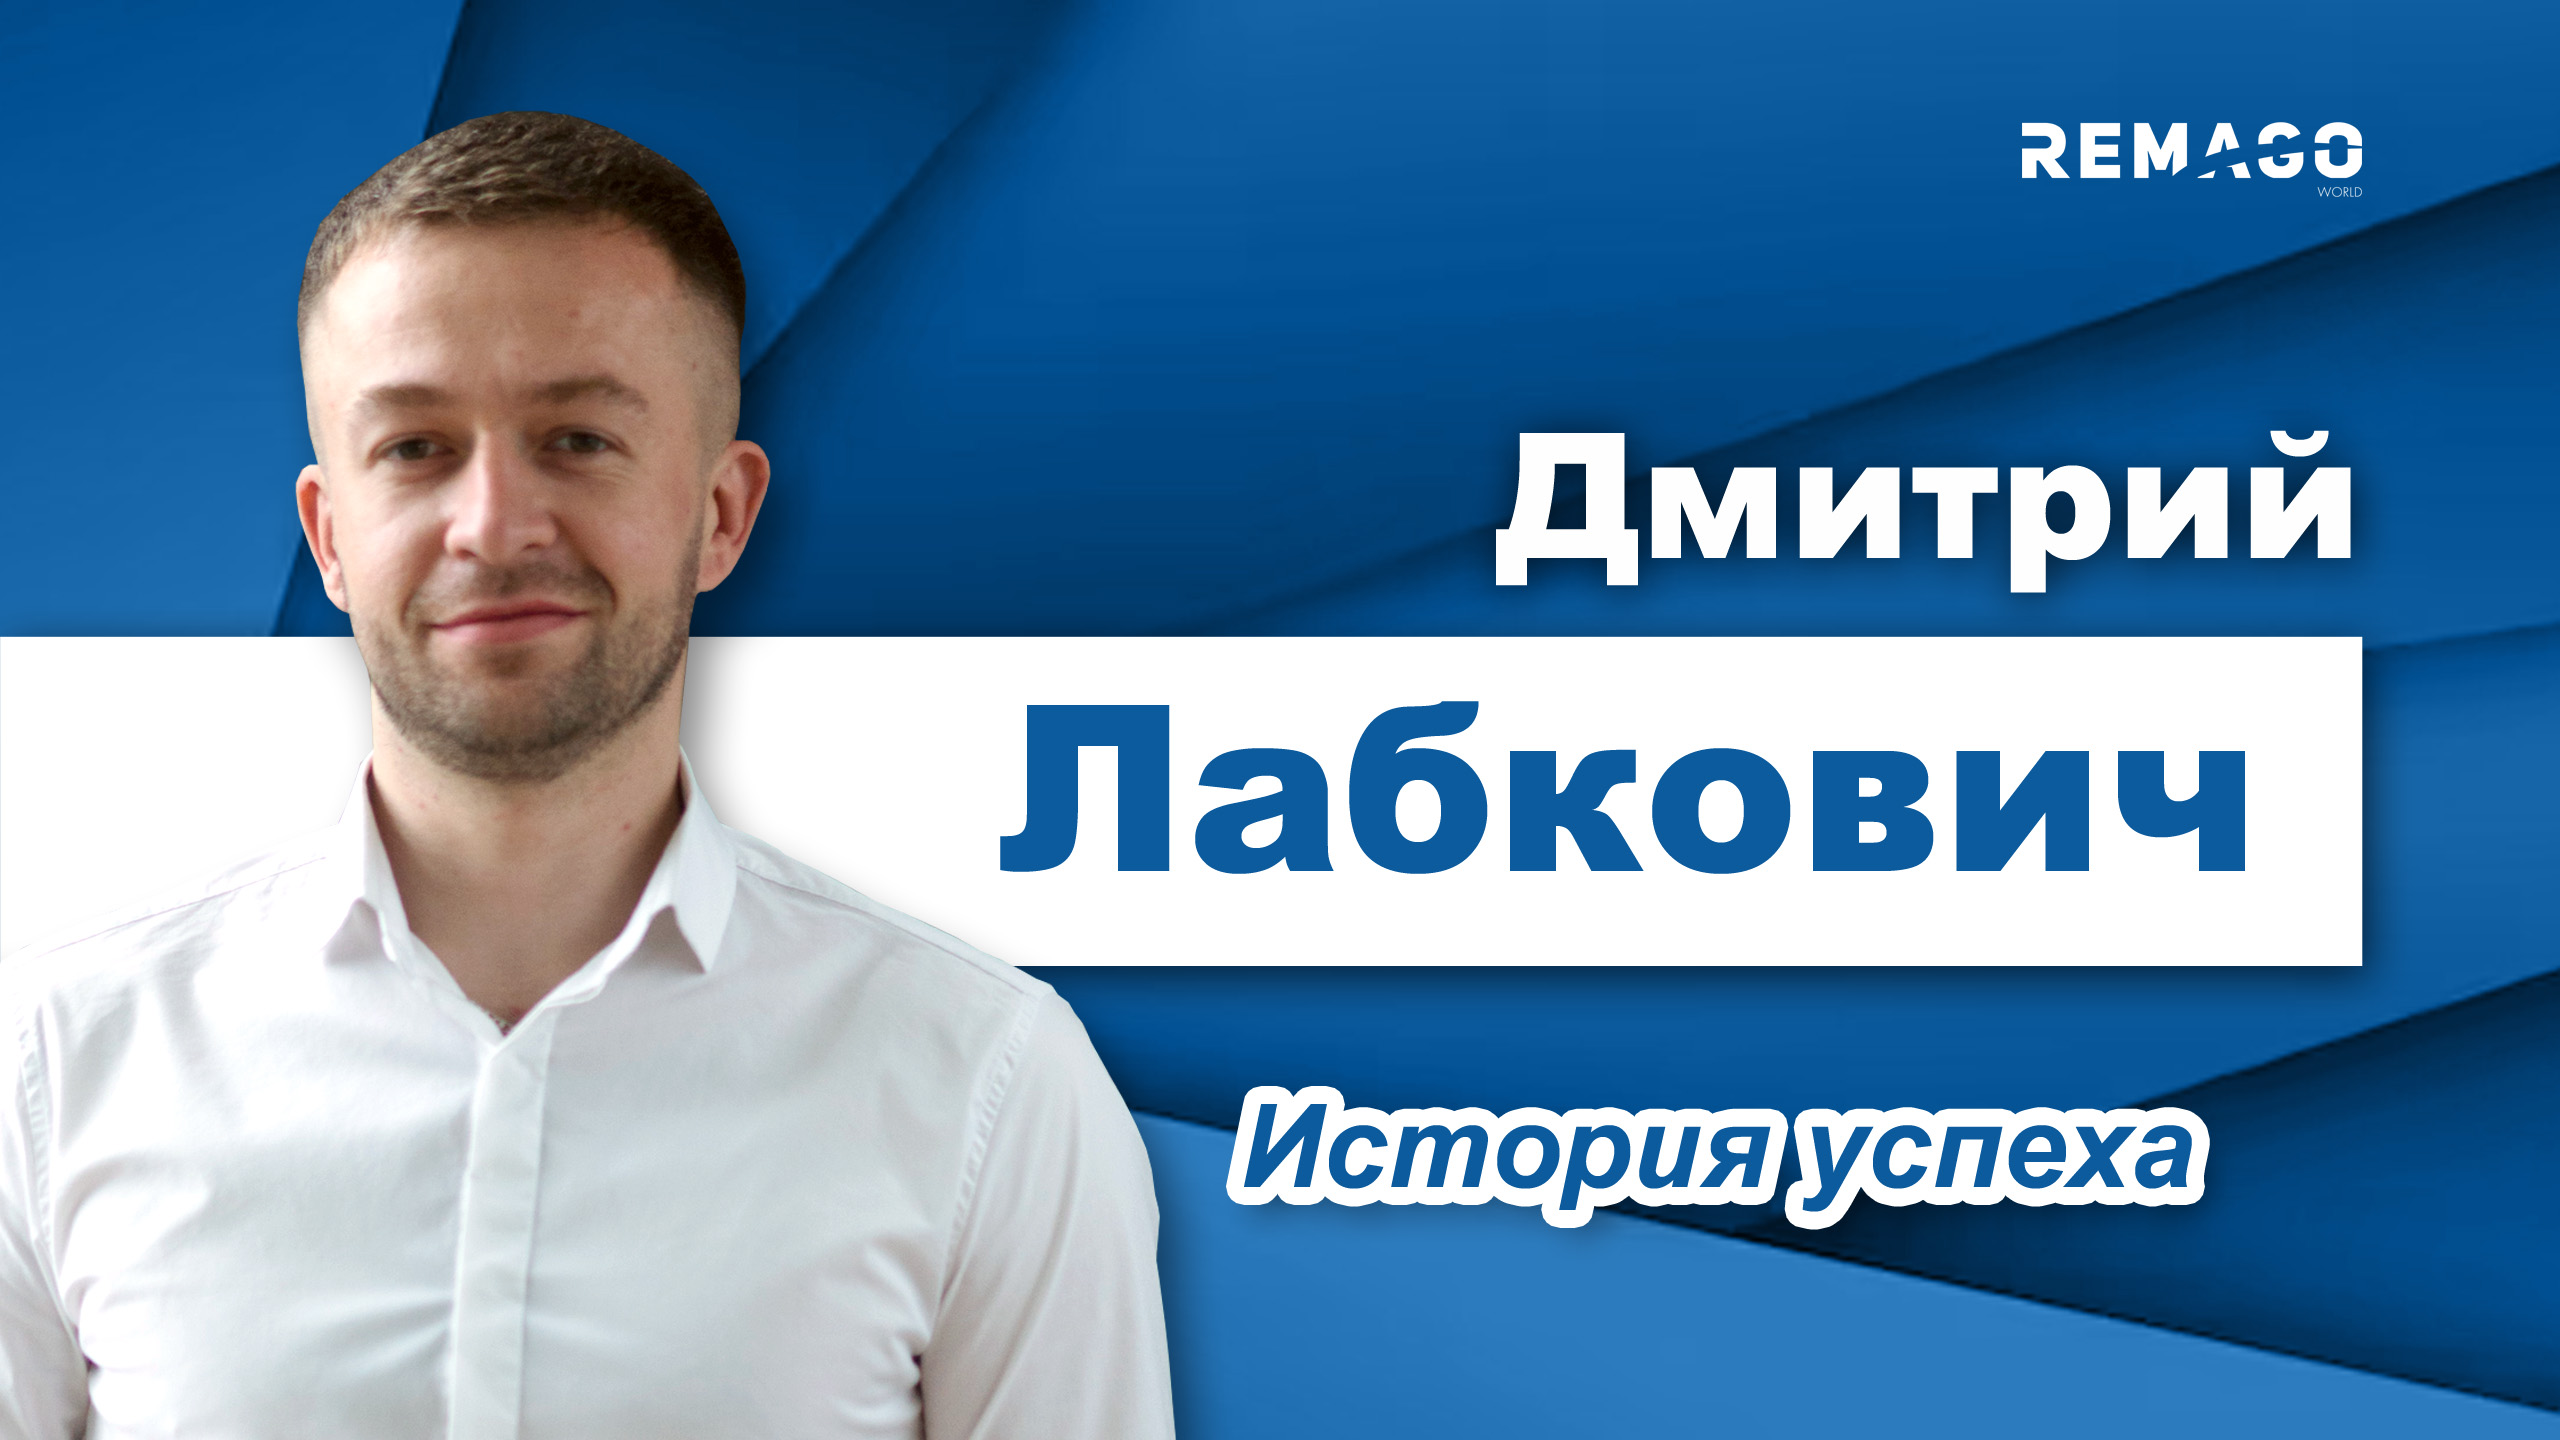 Дмитрий Лабкович - путь от офицера МЧС до бизнеса республиканского масштаба